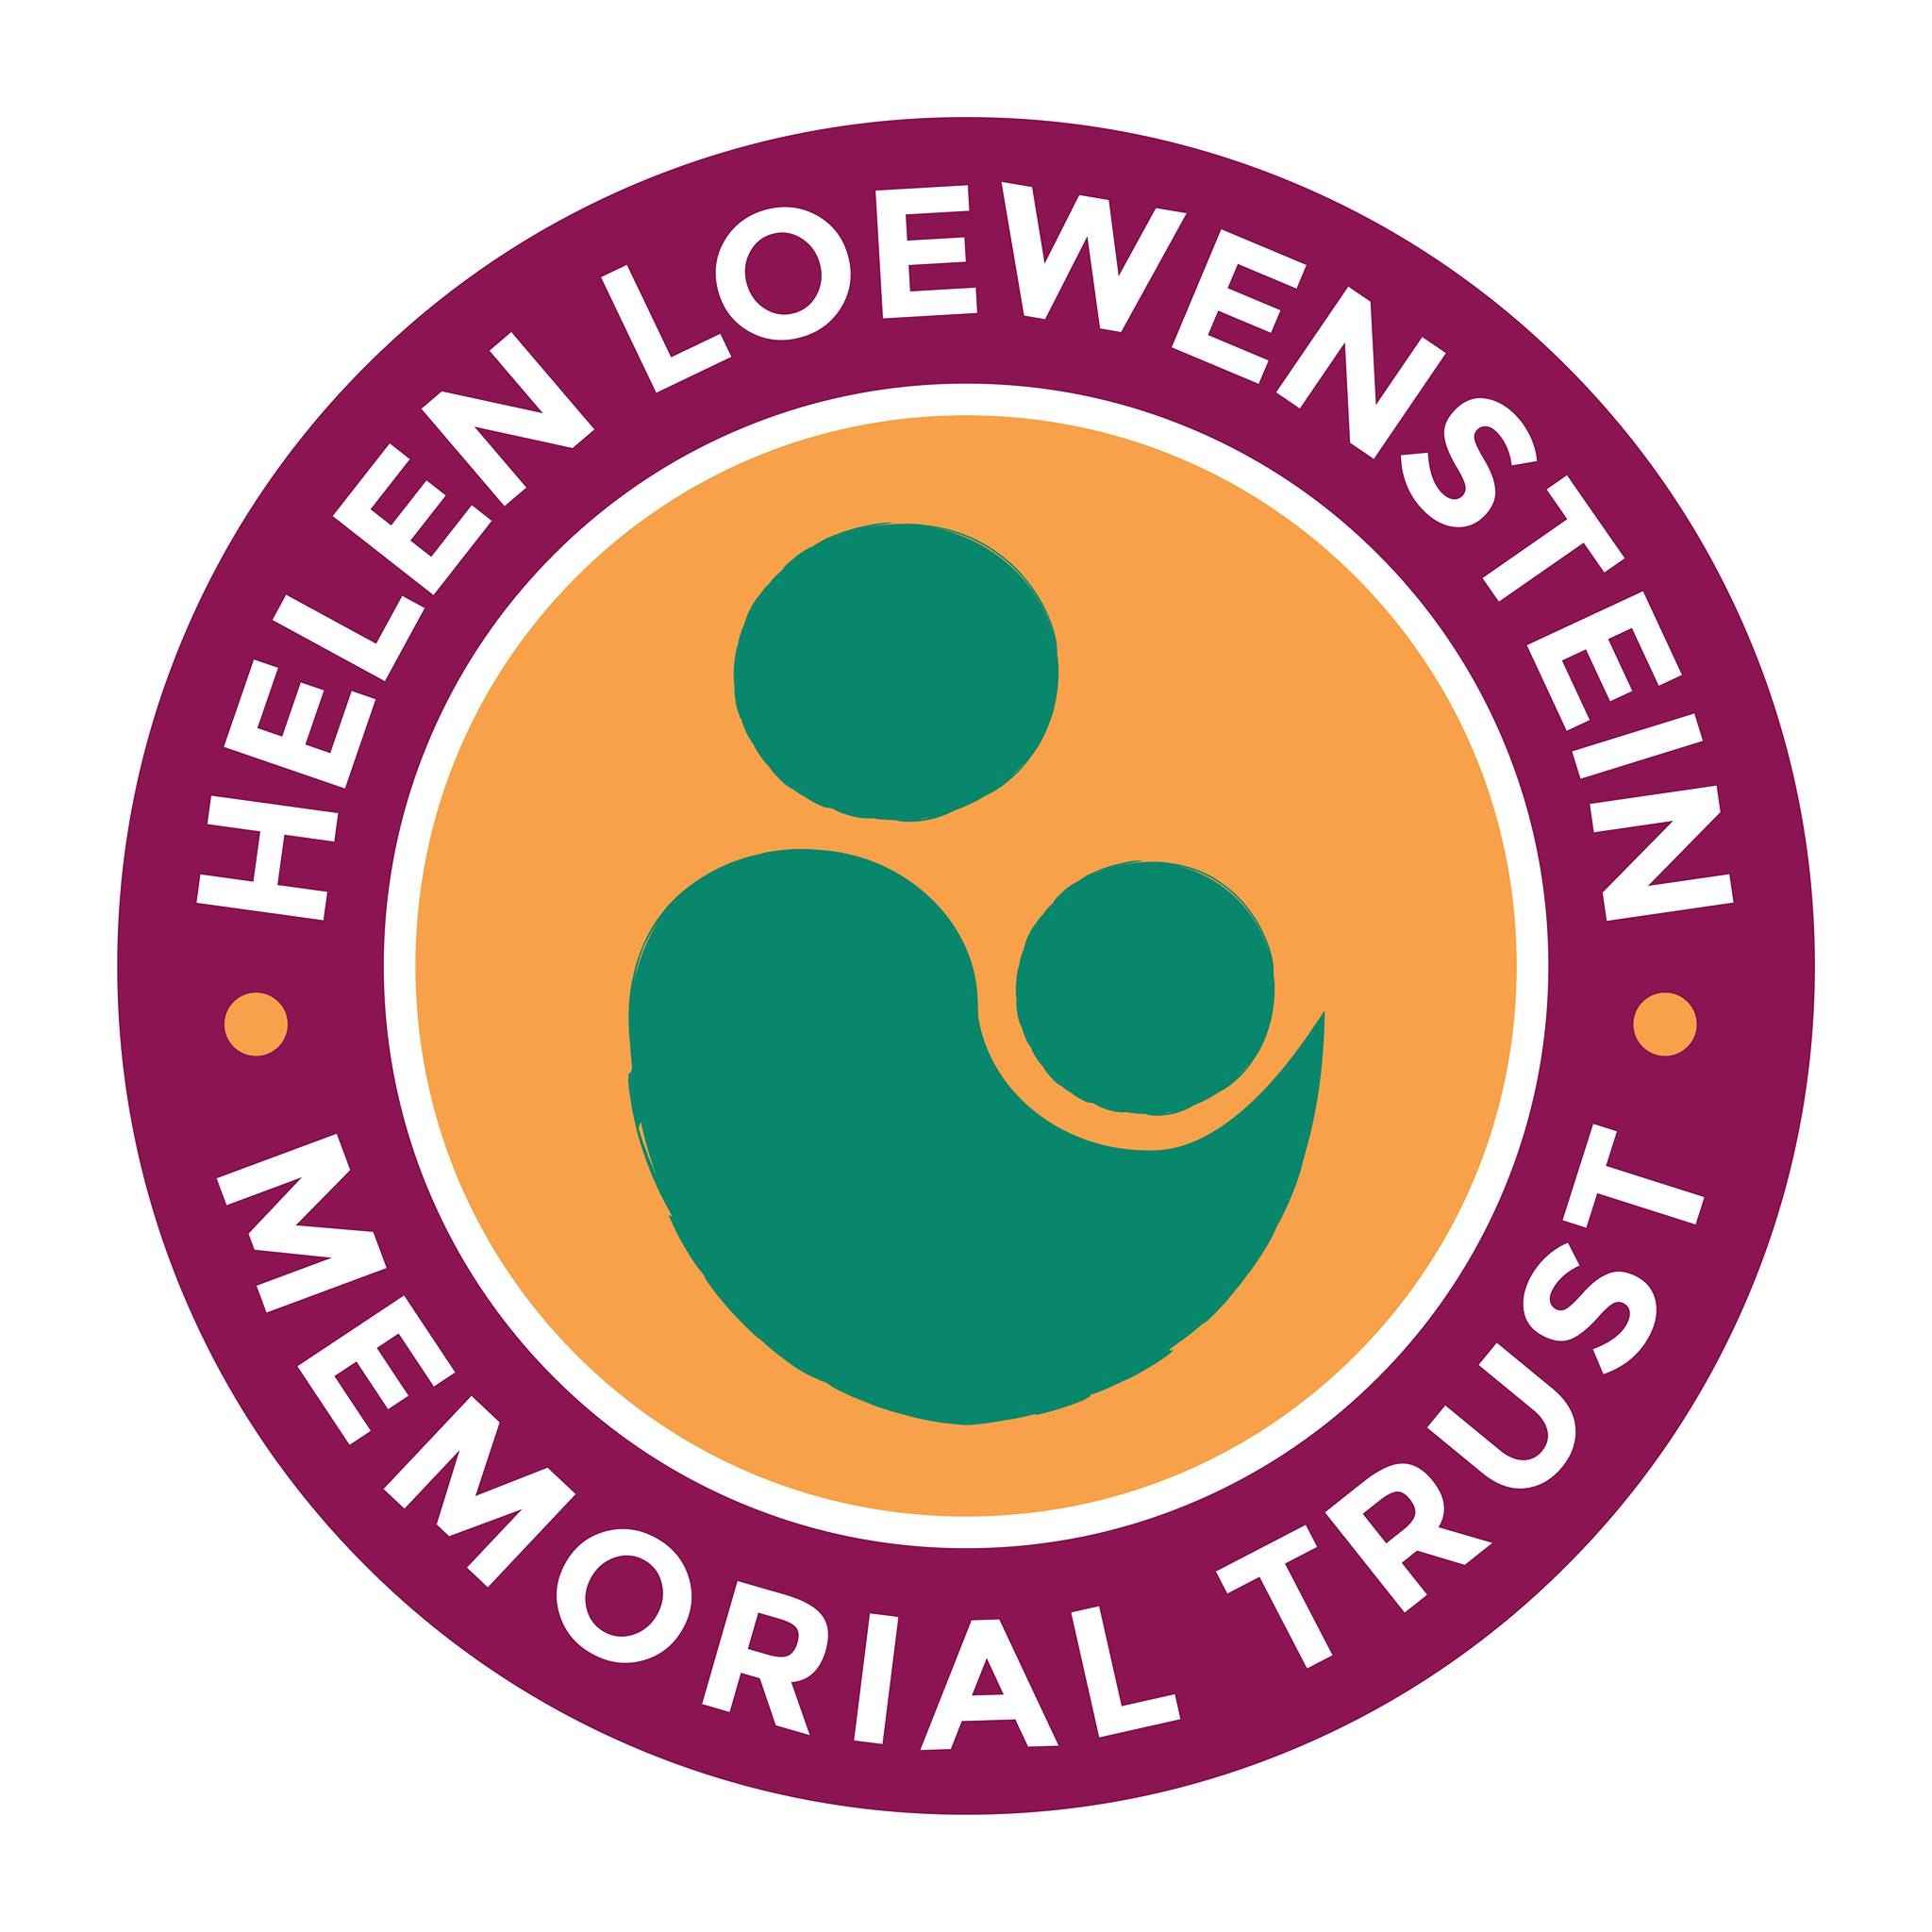 The Helen Loewenstein Memorial Trust